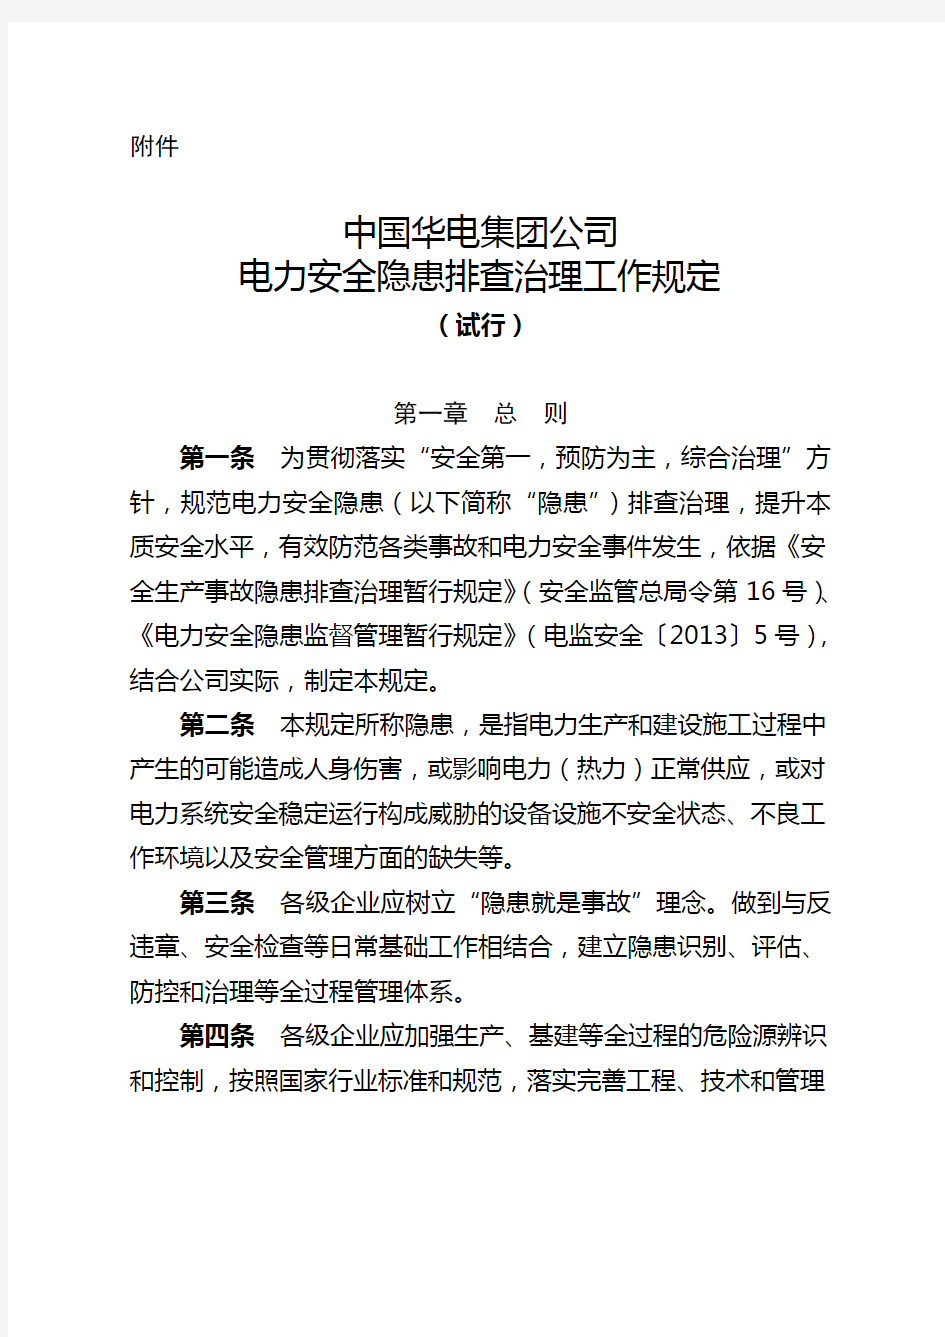 中国华电集团公司电力安全生产隐患排查治理工作规定 试行